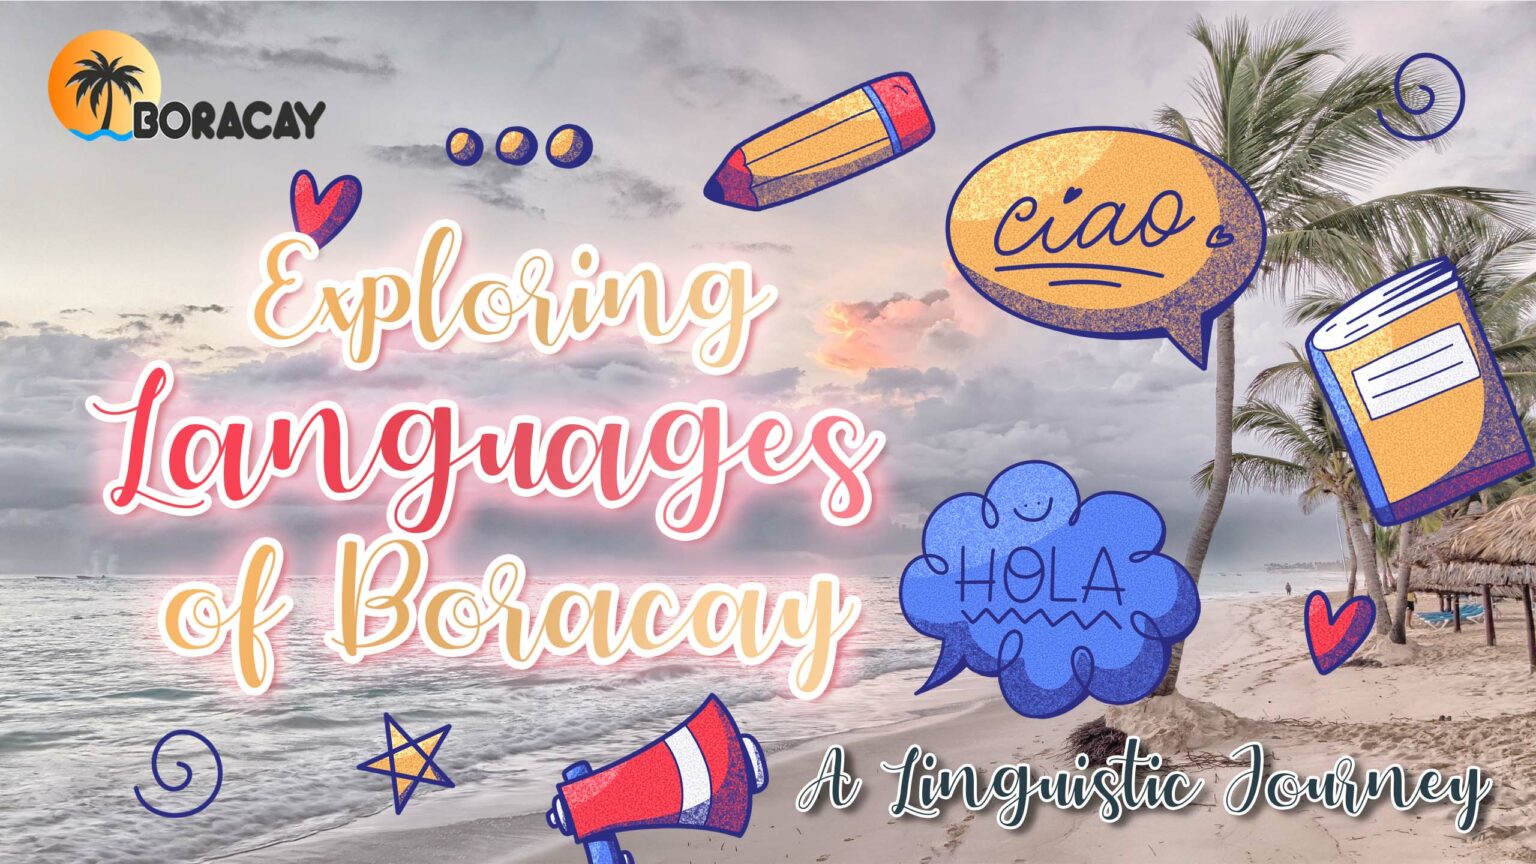 Languages of Boracay